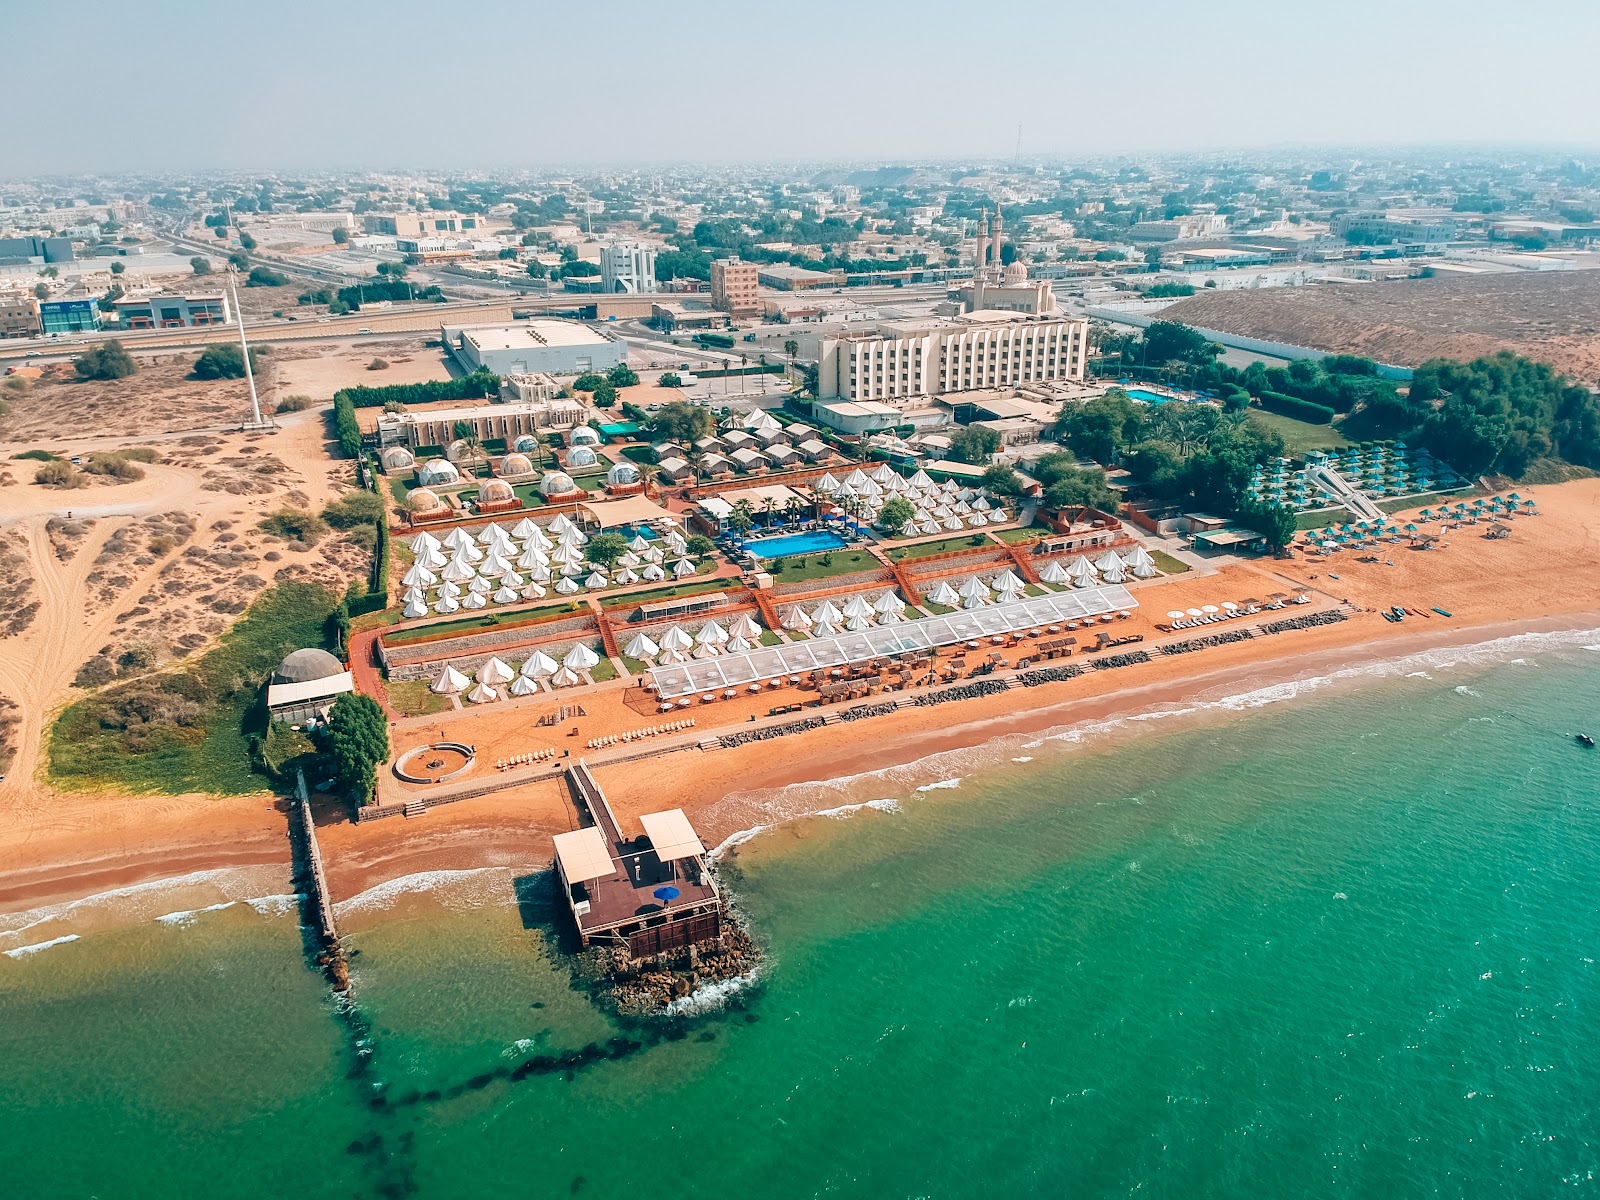 Zdjęcie Bin Majid resort - popularne miejsce wśród znawców relaksu